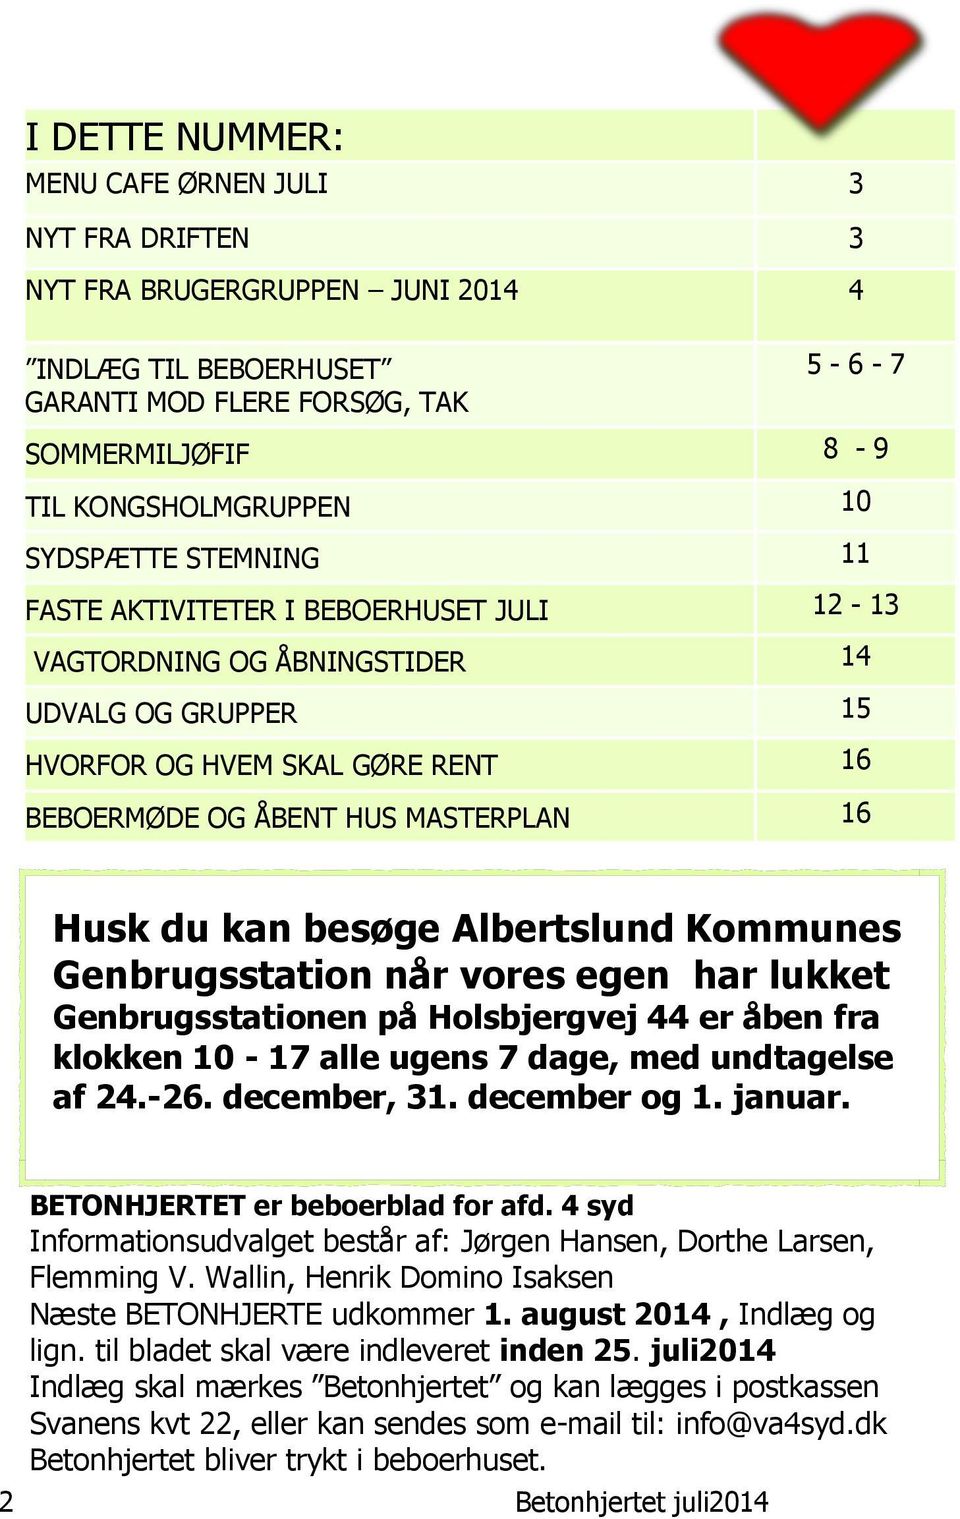 kan besøge Albertslund Kommunes Genbrugsstation når vores egen har lukket Genbrugsstationen på Holsbjergvej 44 er åben fra klokken 10-17 alle ugens 7 dage, med undtagelse af 24.-26. december, 31.